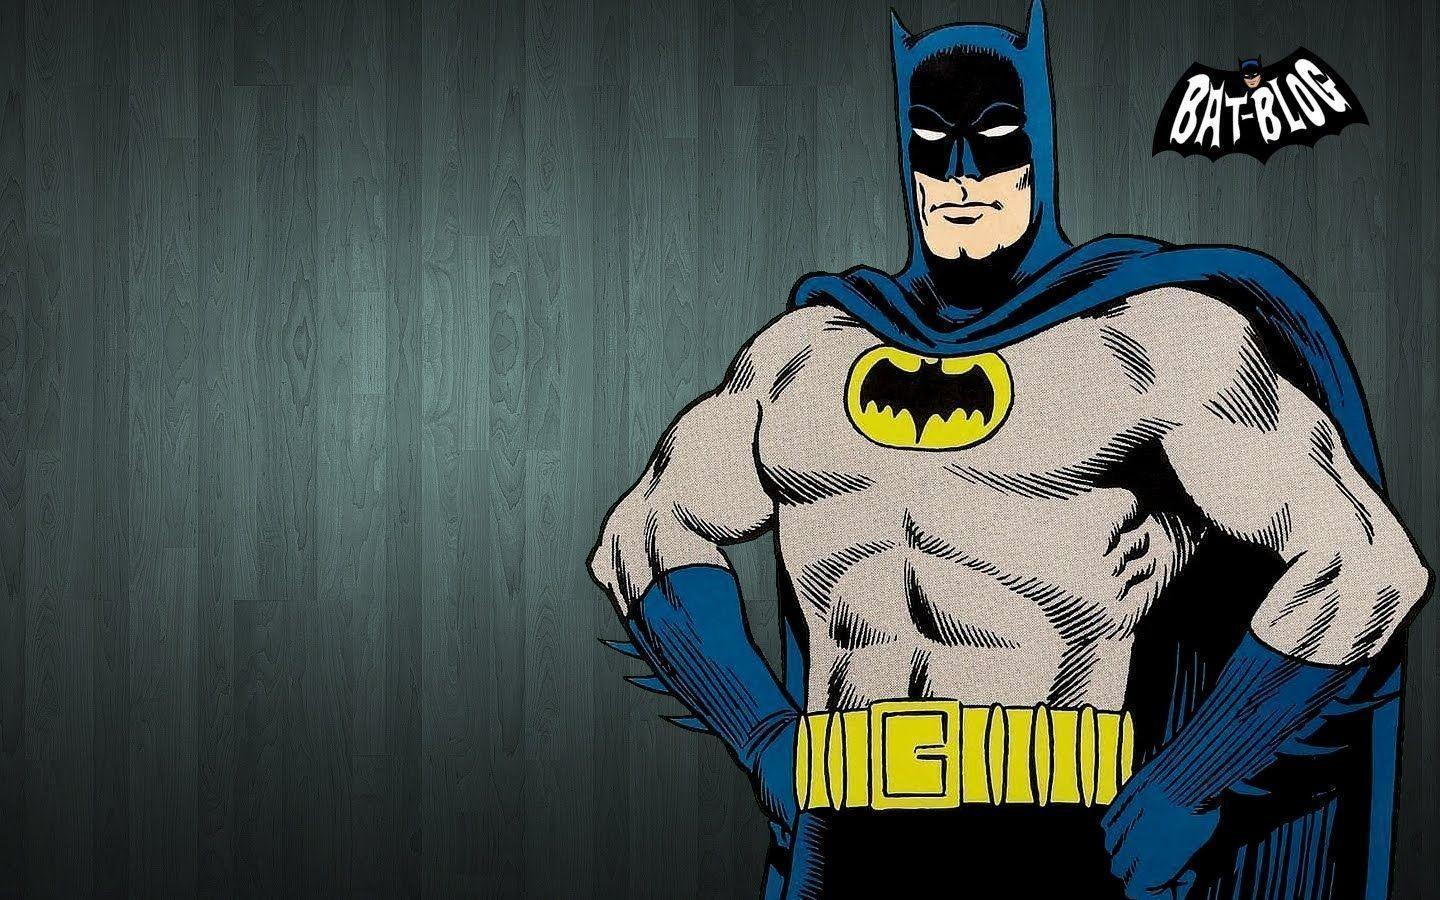 image For > Comic Book Batman Wallpaper